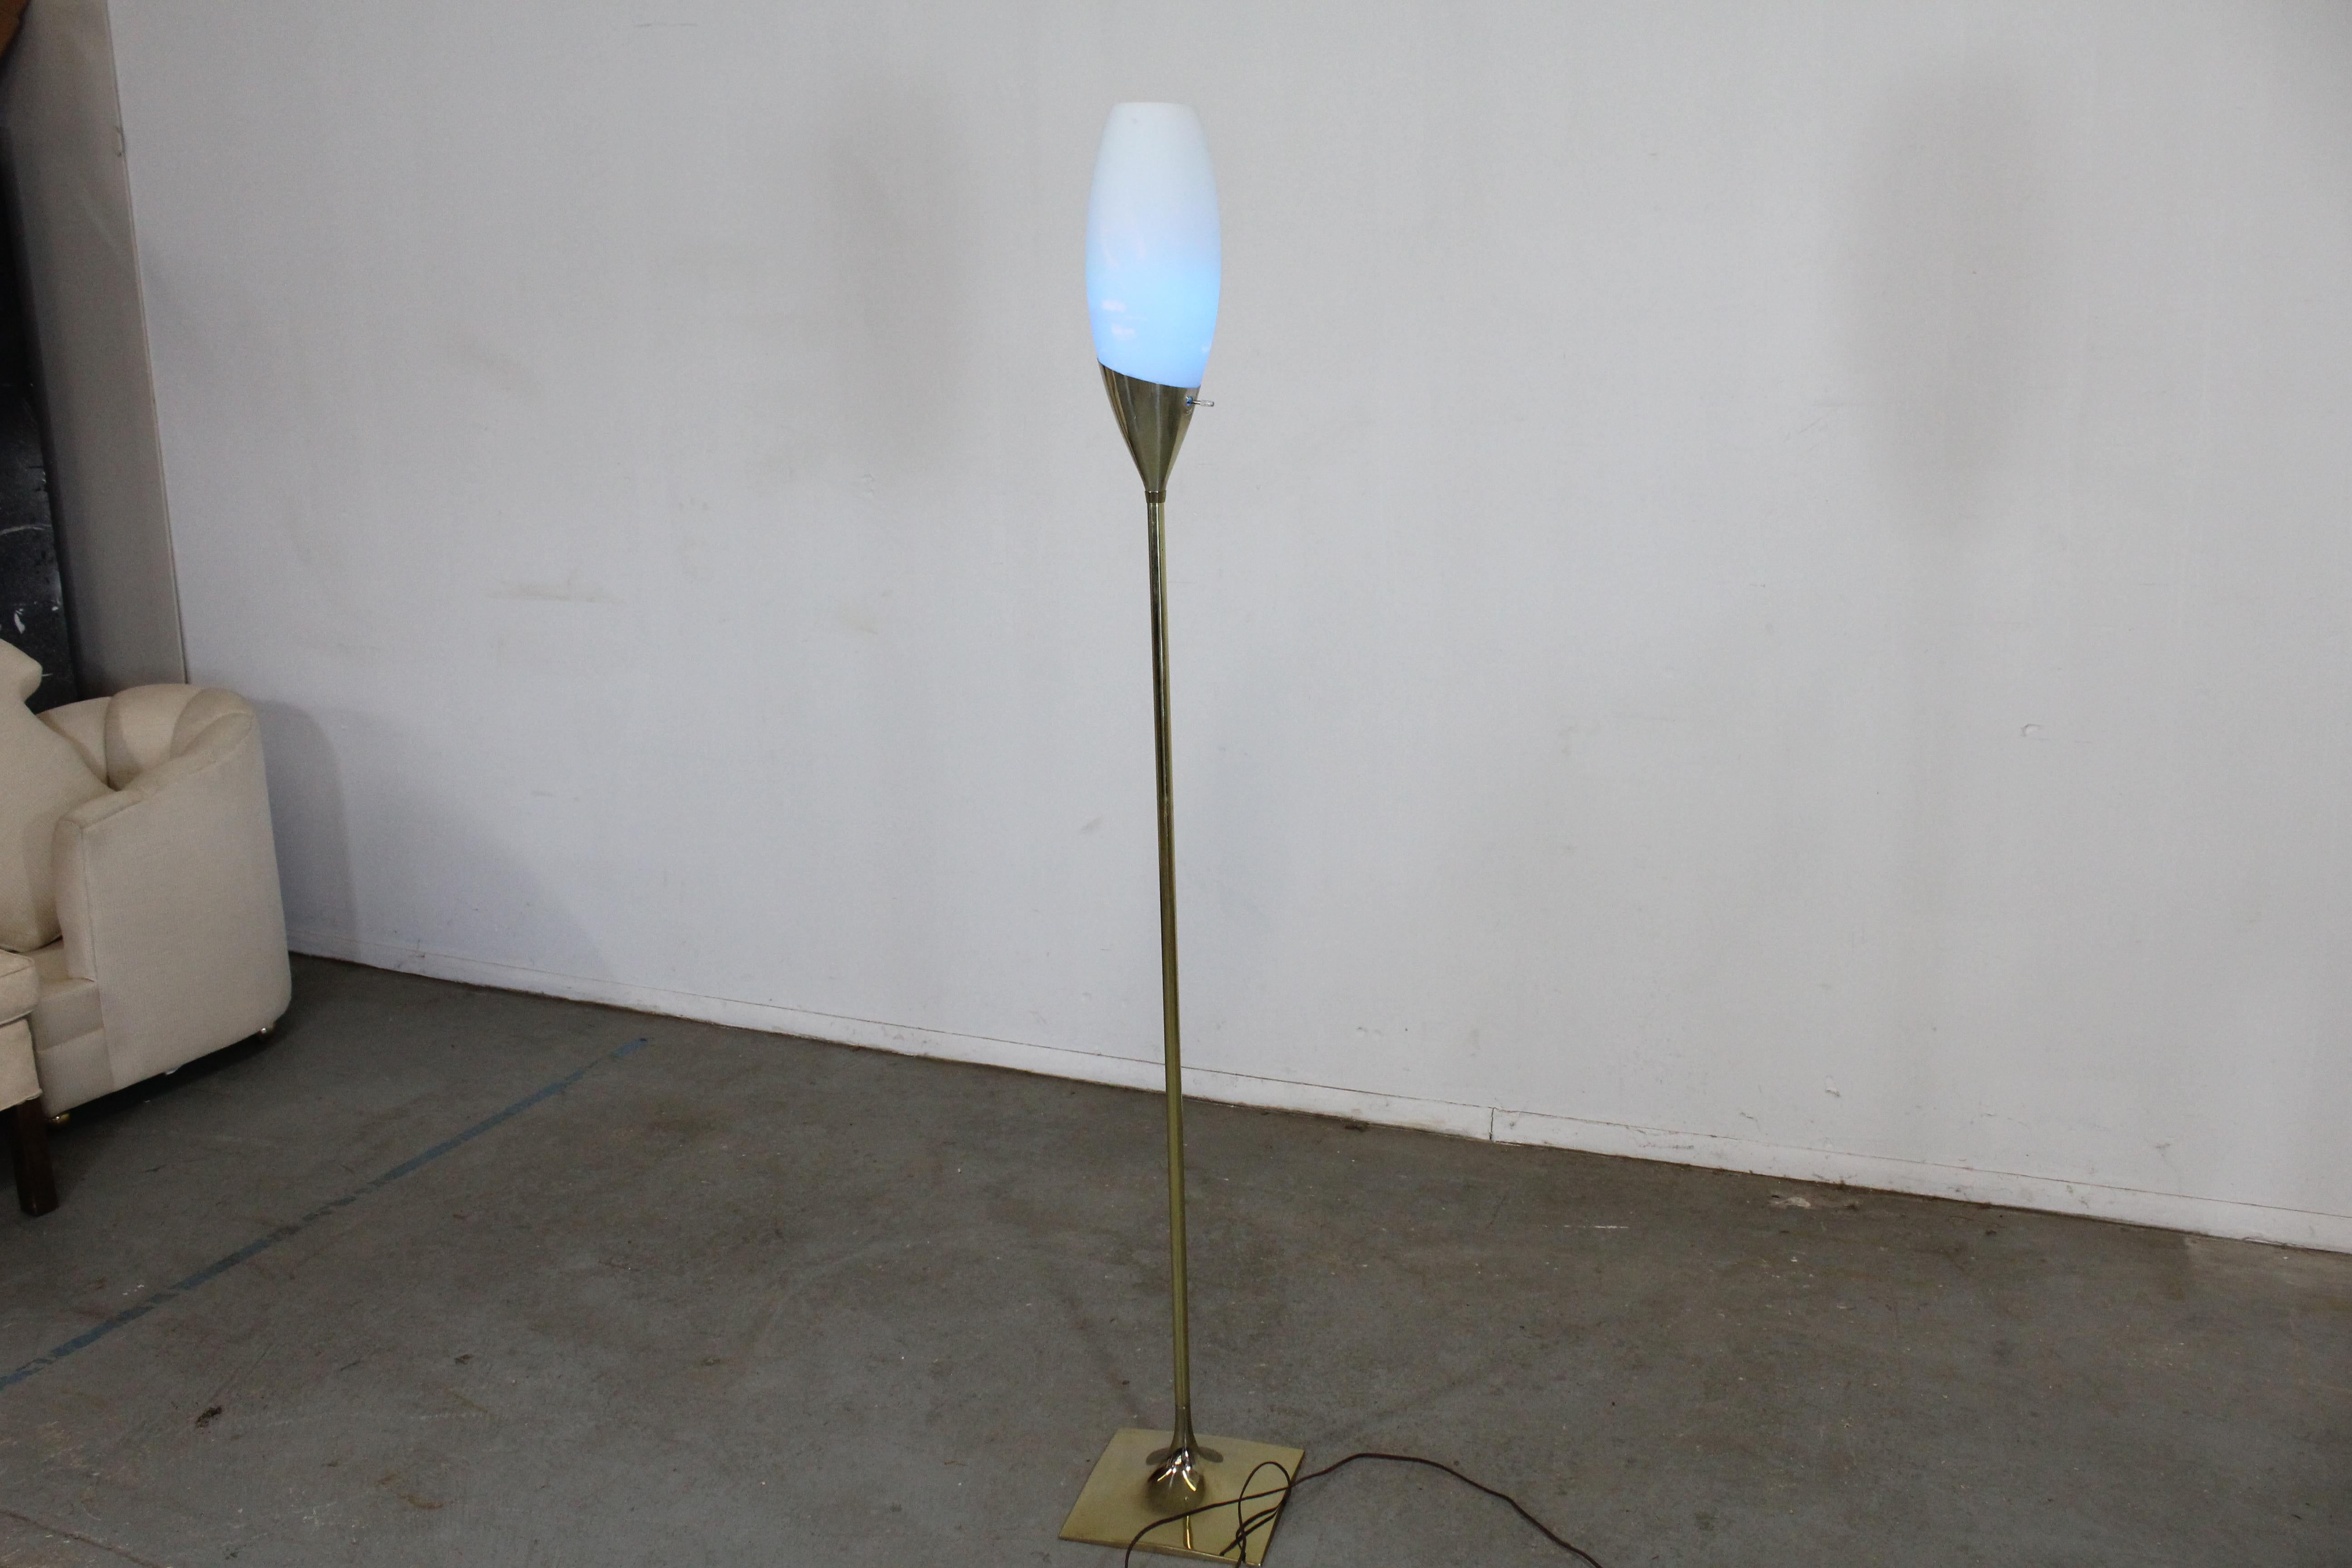 Lampadaire Tulip de Gerald Thurston, de style moderne du milieu du siècle.

Nous vous proposons un magnifique lampadaire vintage de style Mid-Century Modern. La lampe est fabriquée en laiton. Il est en bon état vintage, a été testé et fonctionne.